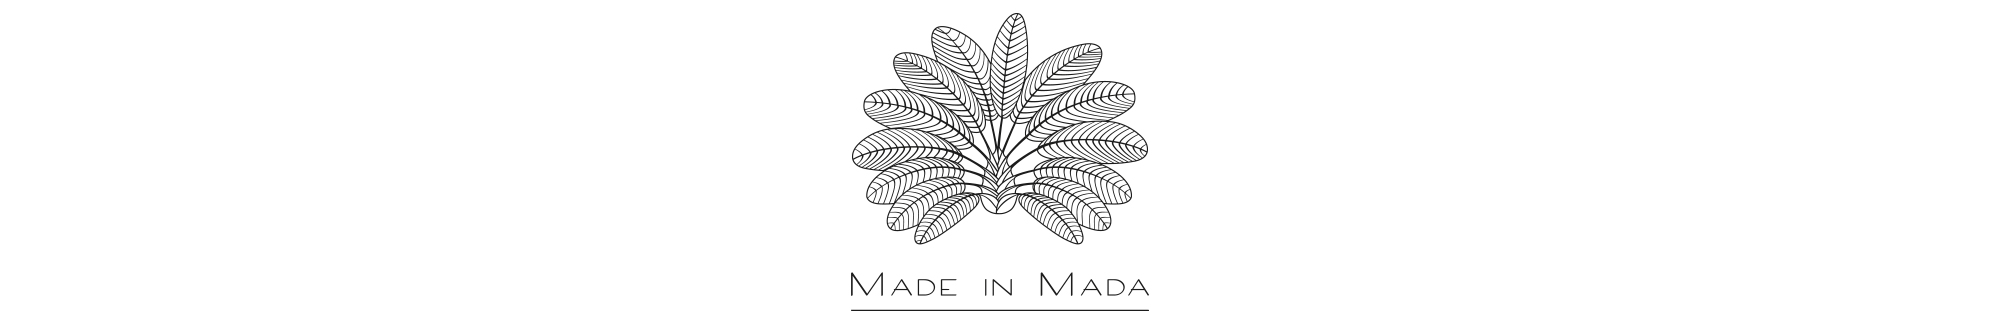 Made In Mada/メイド イン マダ